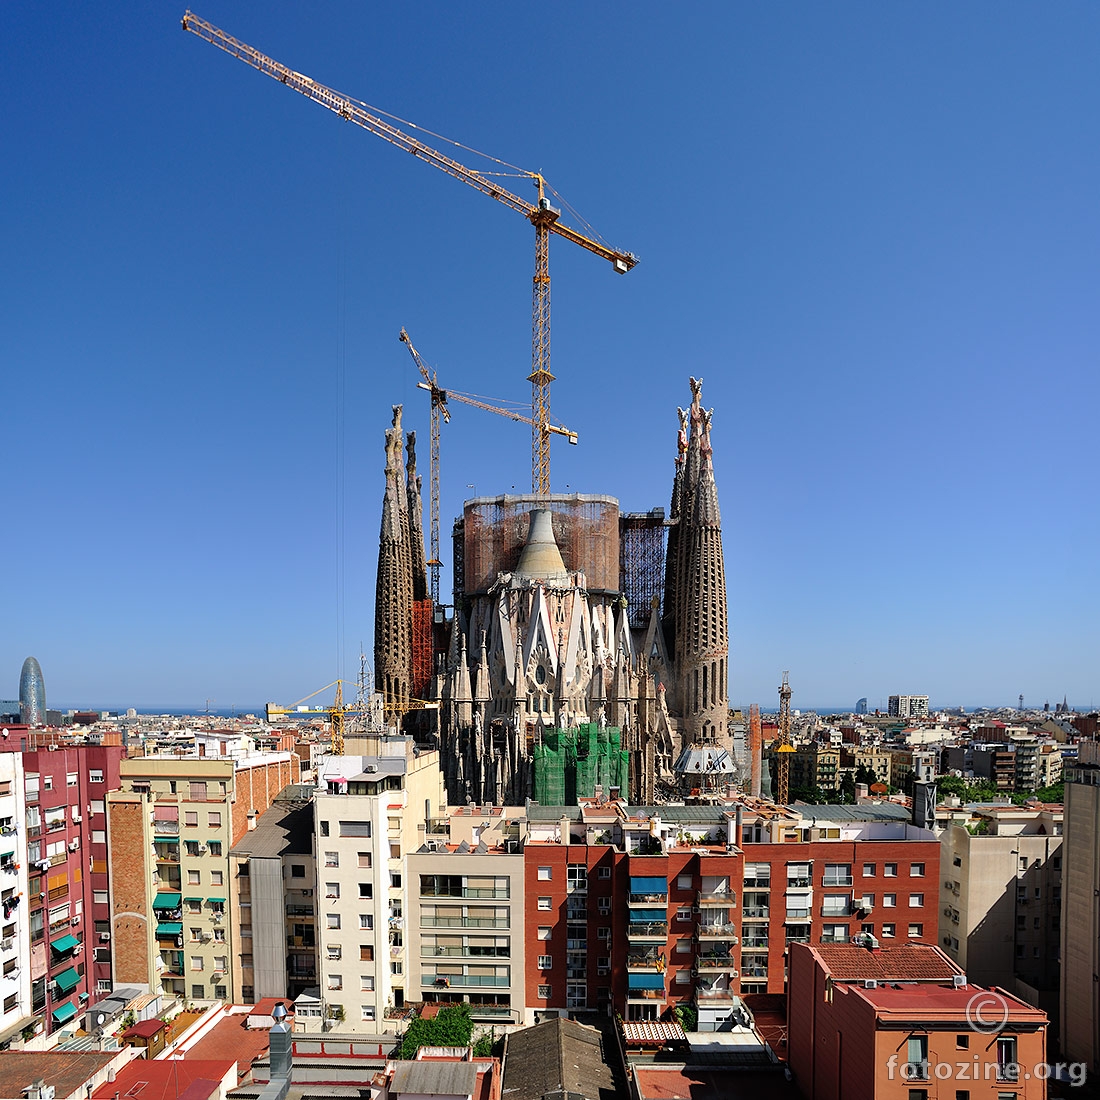 Sagrada Familia - under construction